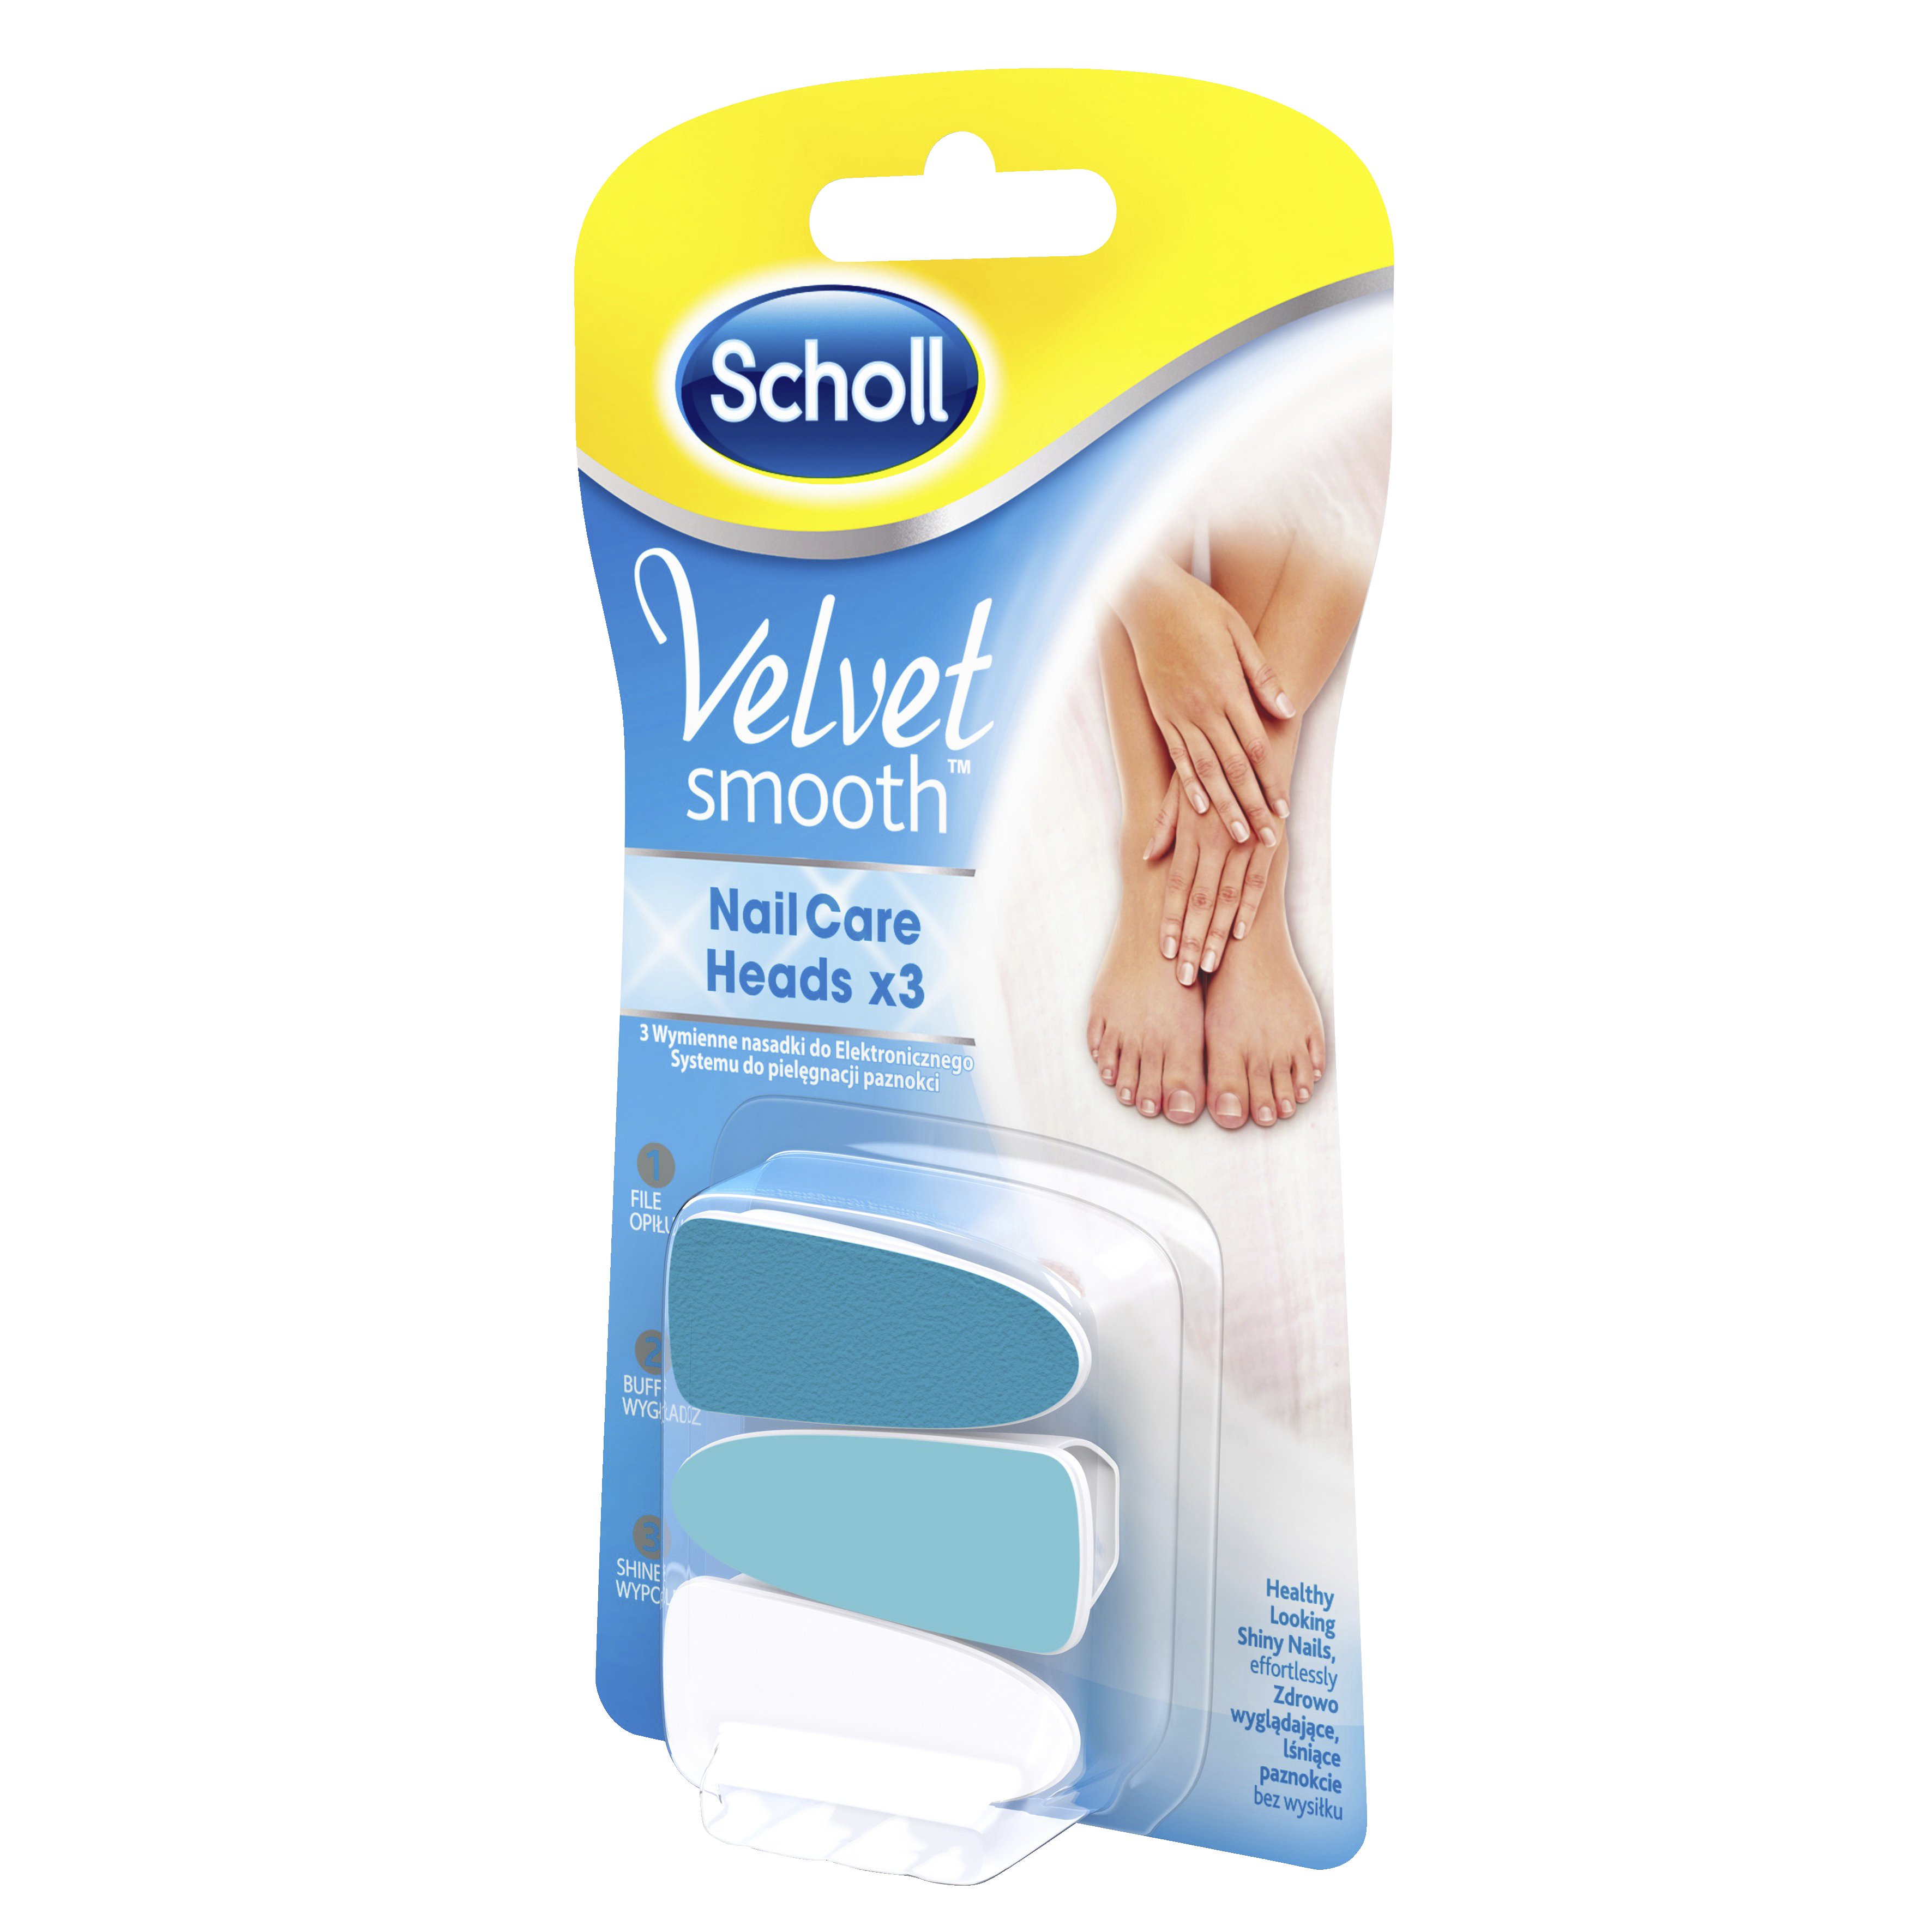 Scholl Velvet Smooth negleplejehoveder SCHOLL3019219 - Manicure og ...